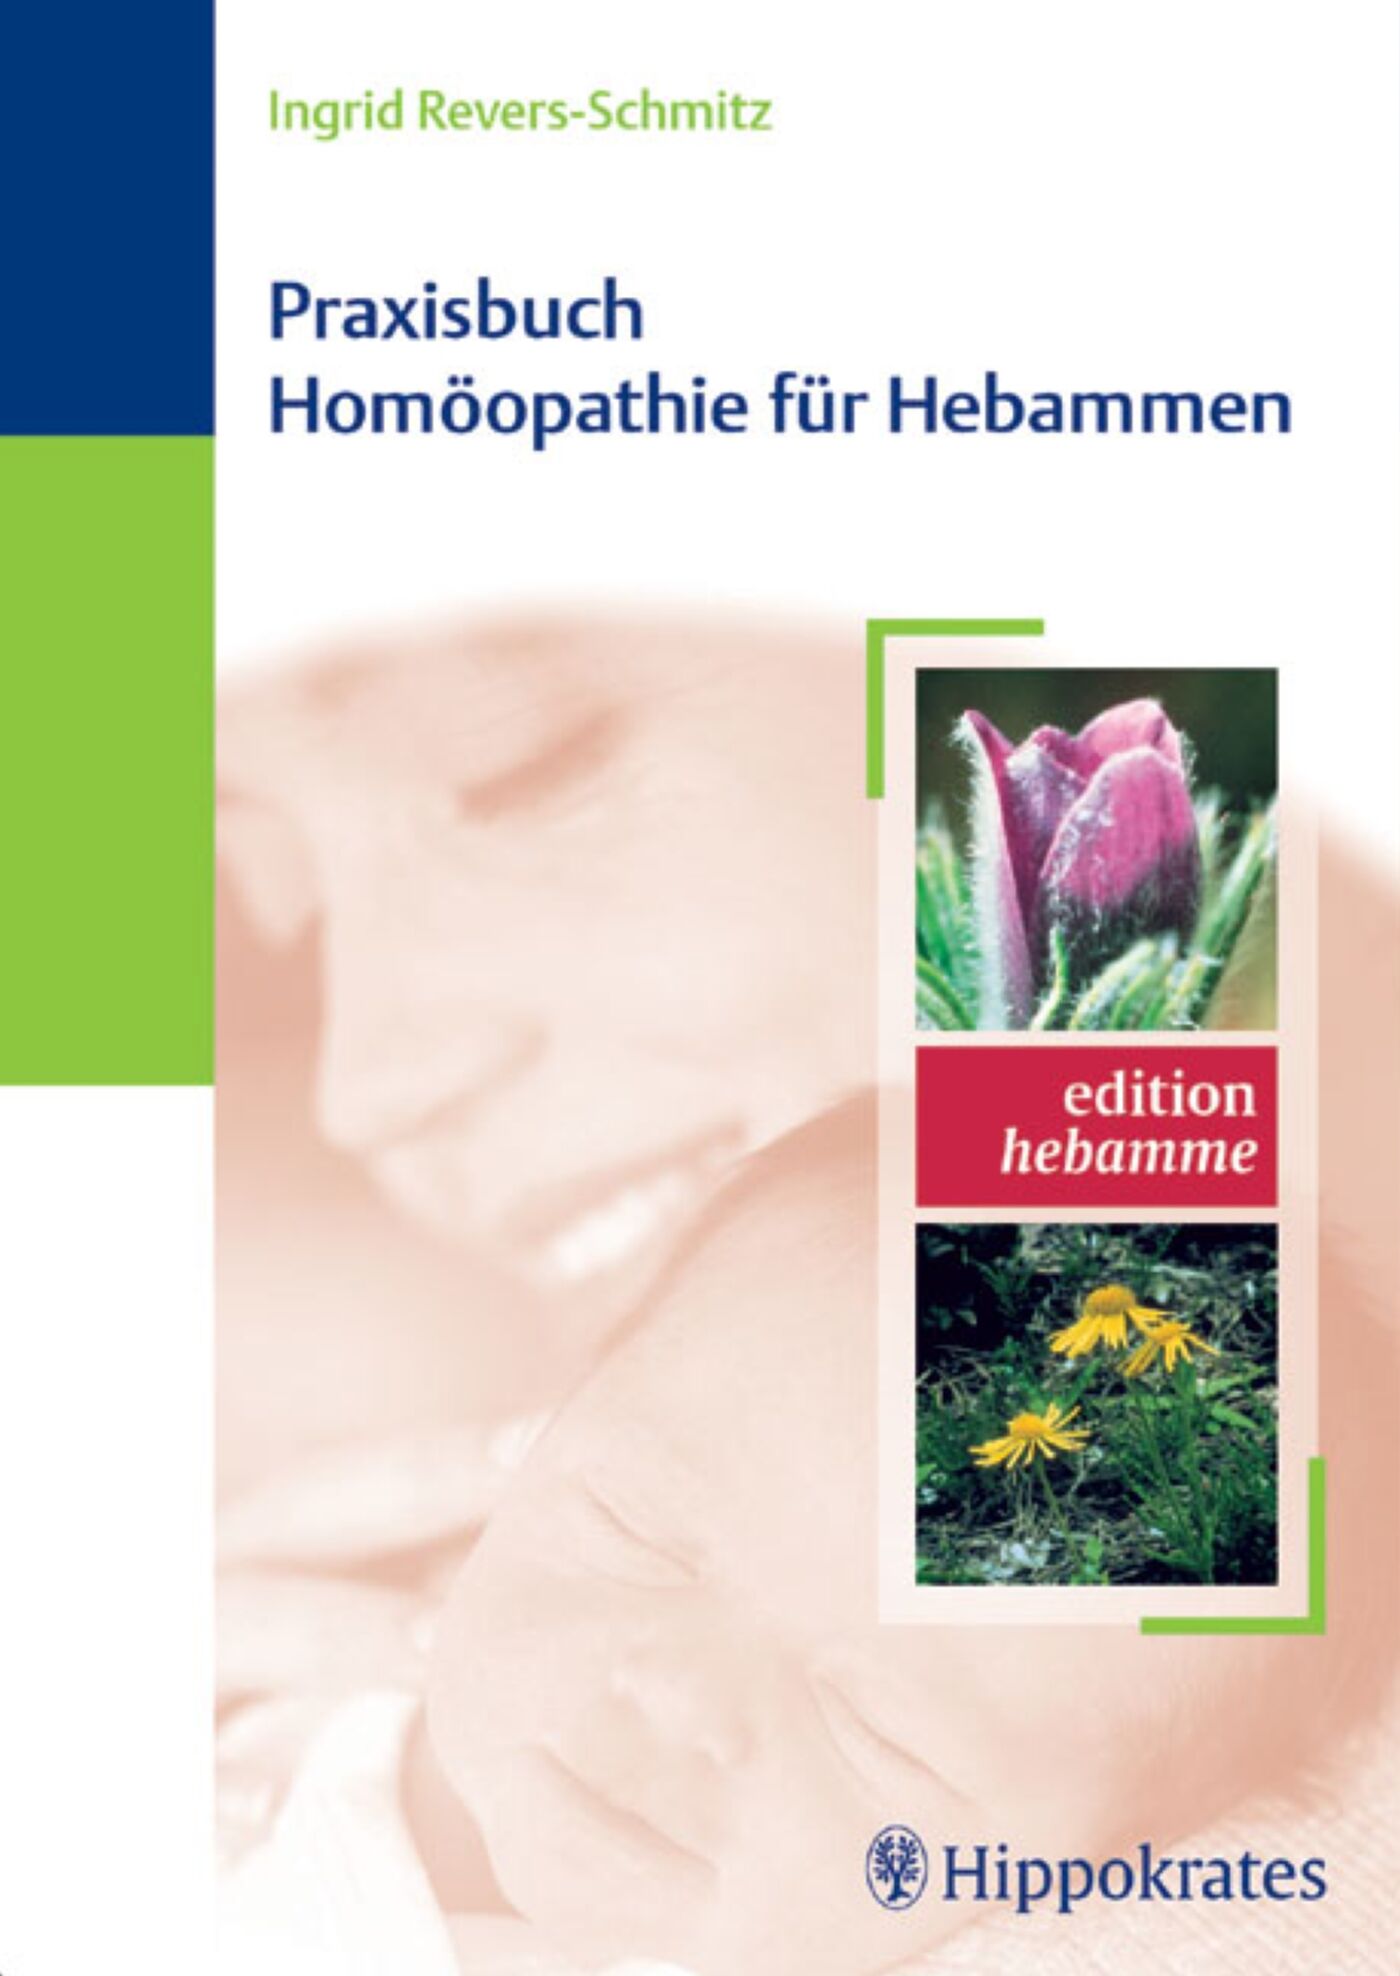 Praxisbuch Homöopathie für Hebammen, 9783830455837